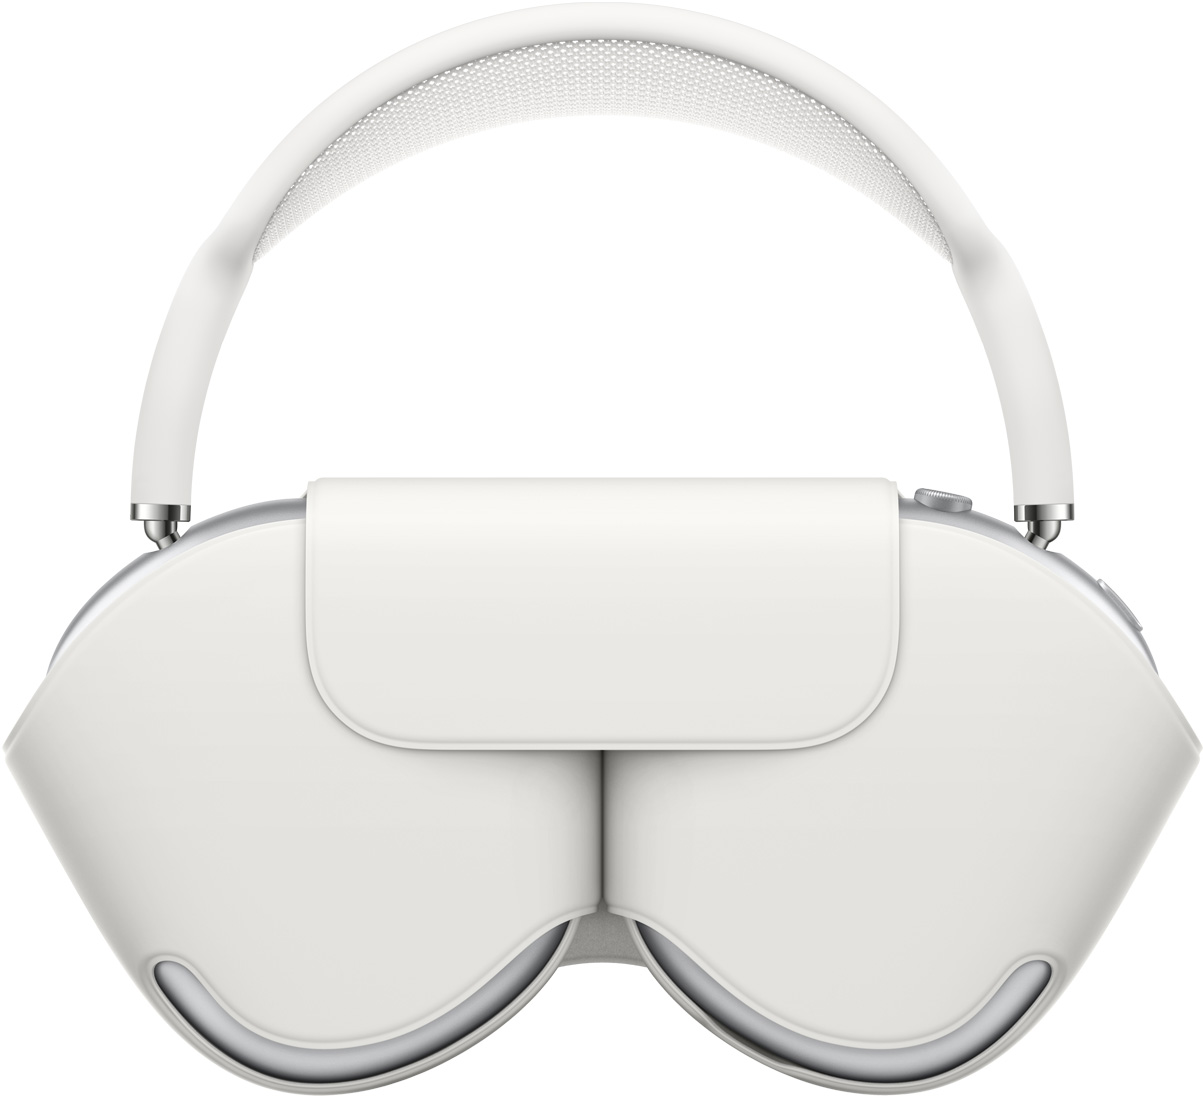 圖片顯示置於聰穎耳機套中的 AirPods Max。